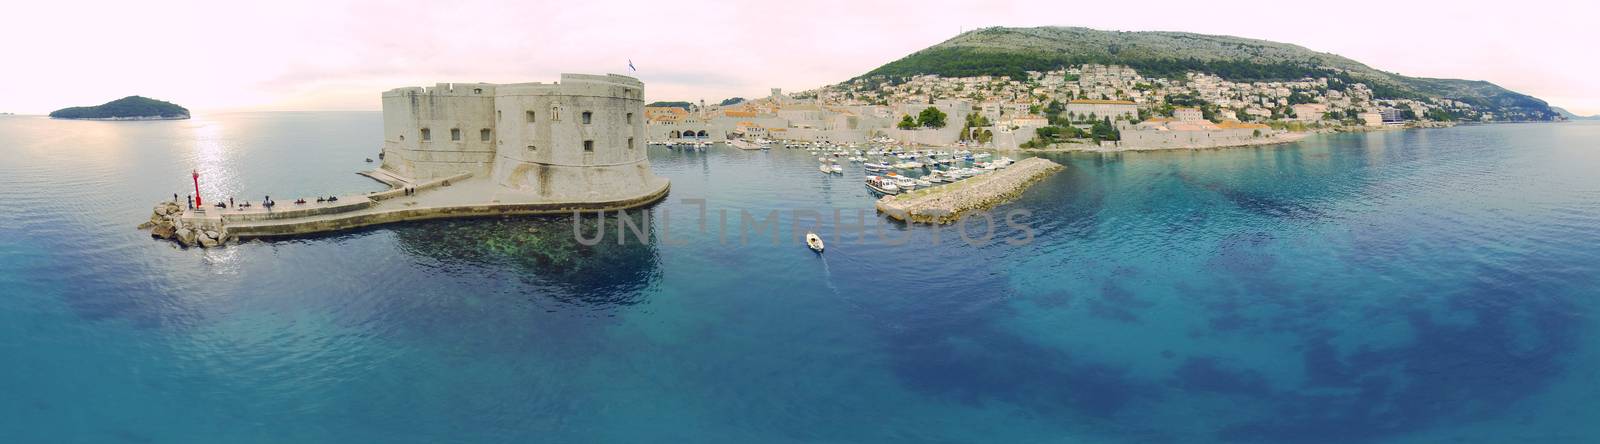 Dubrovnik by Aarstudio